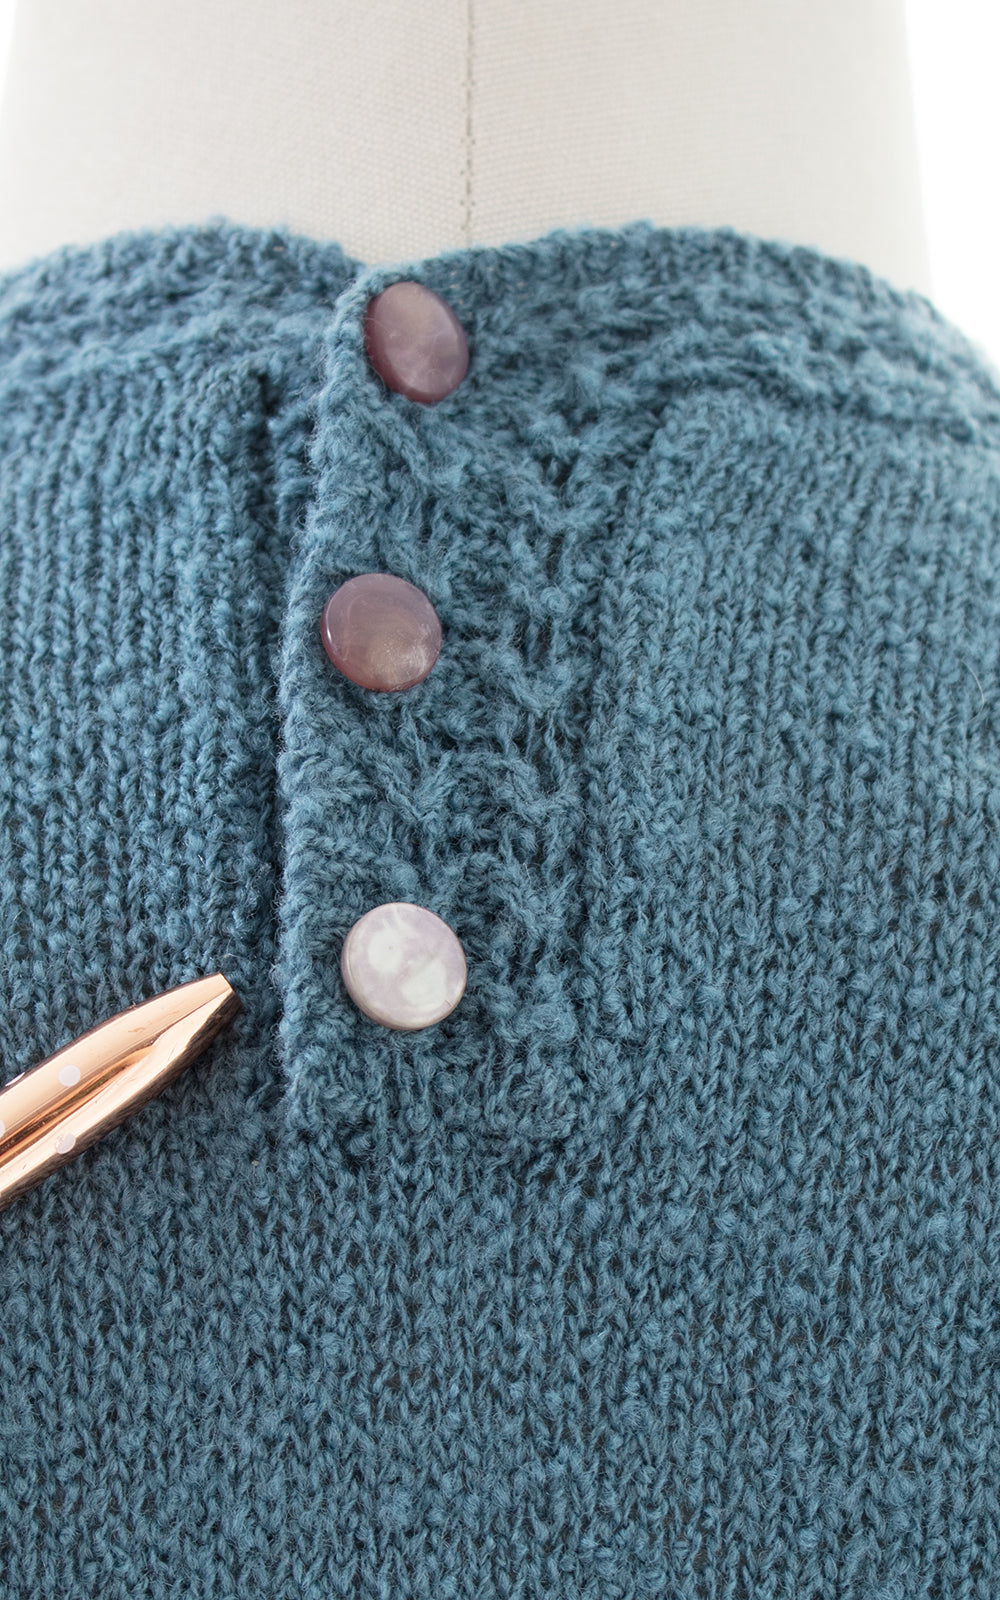 1950s Lass o' Scotland Knit Wool Chenille Sweater Dress